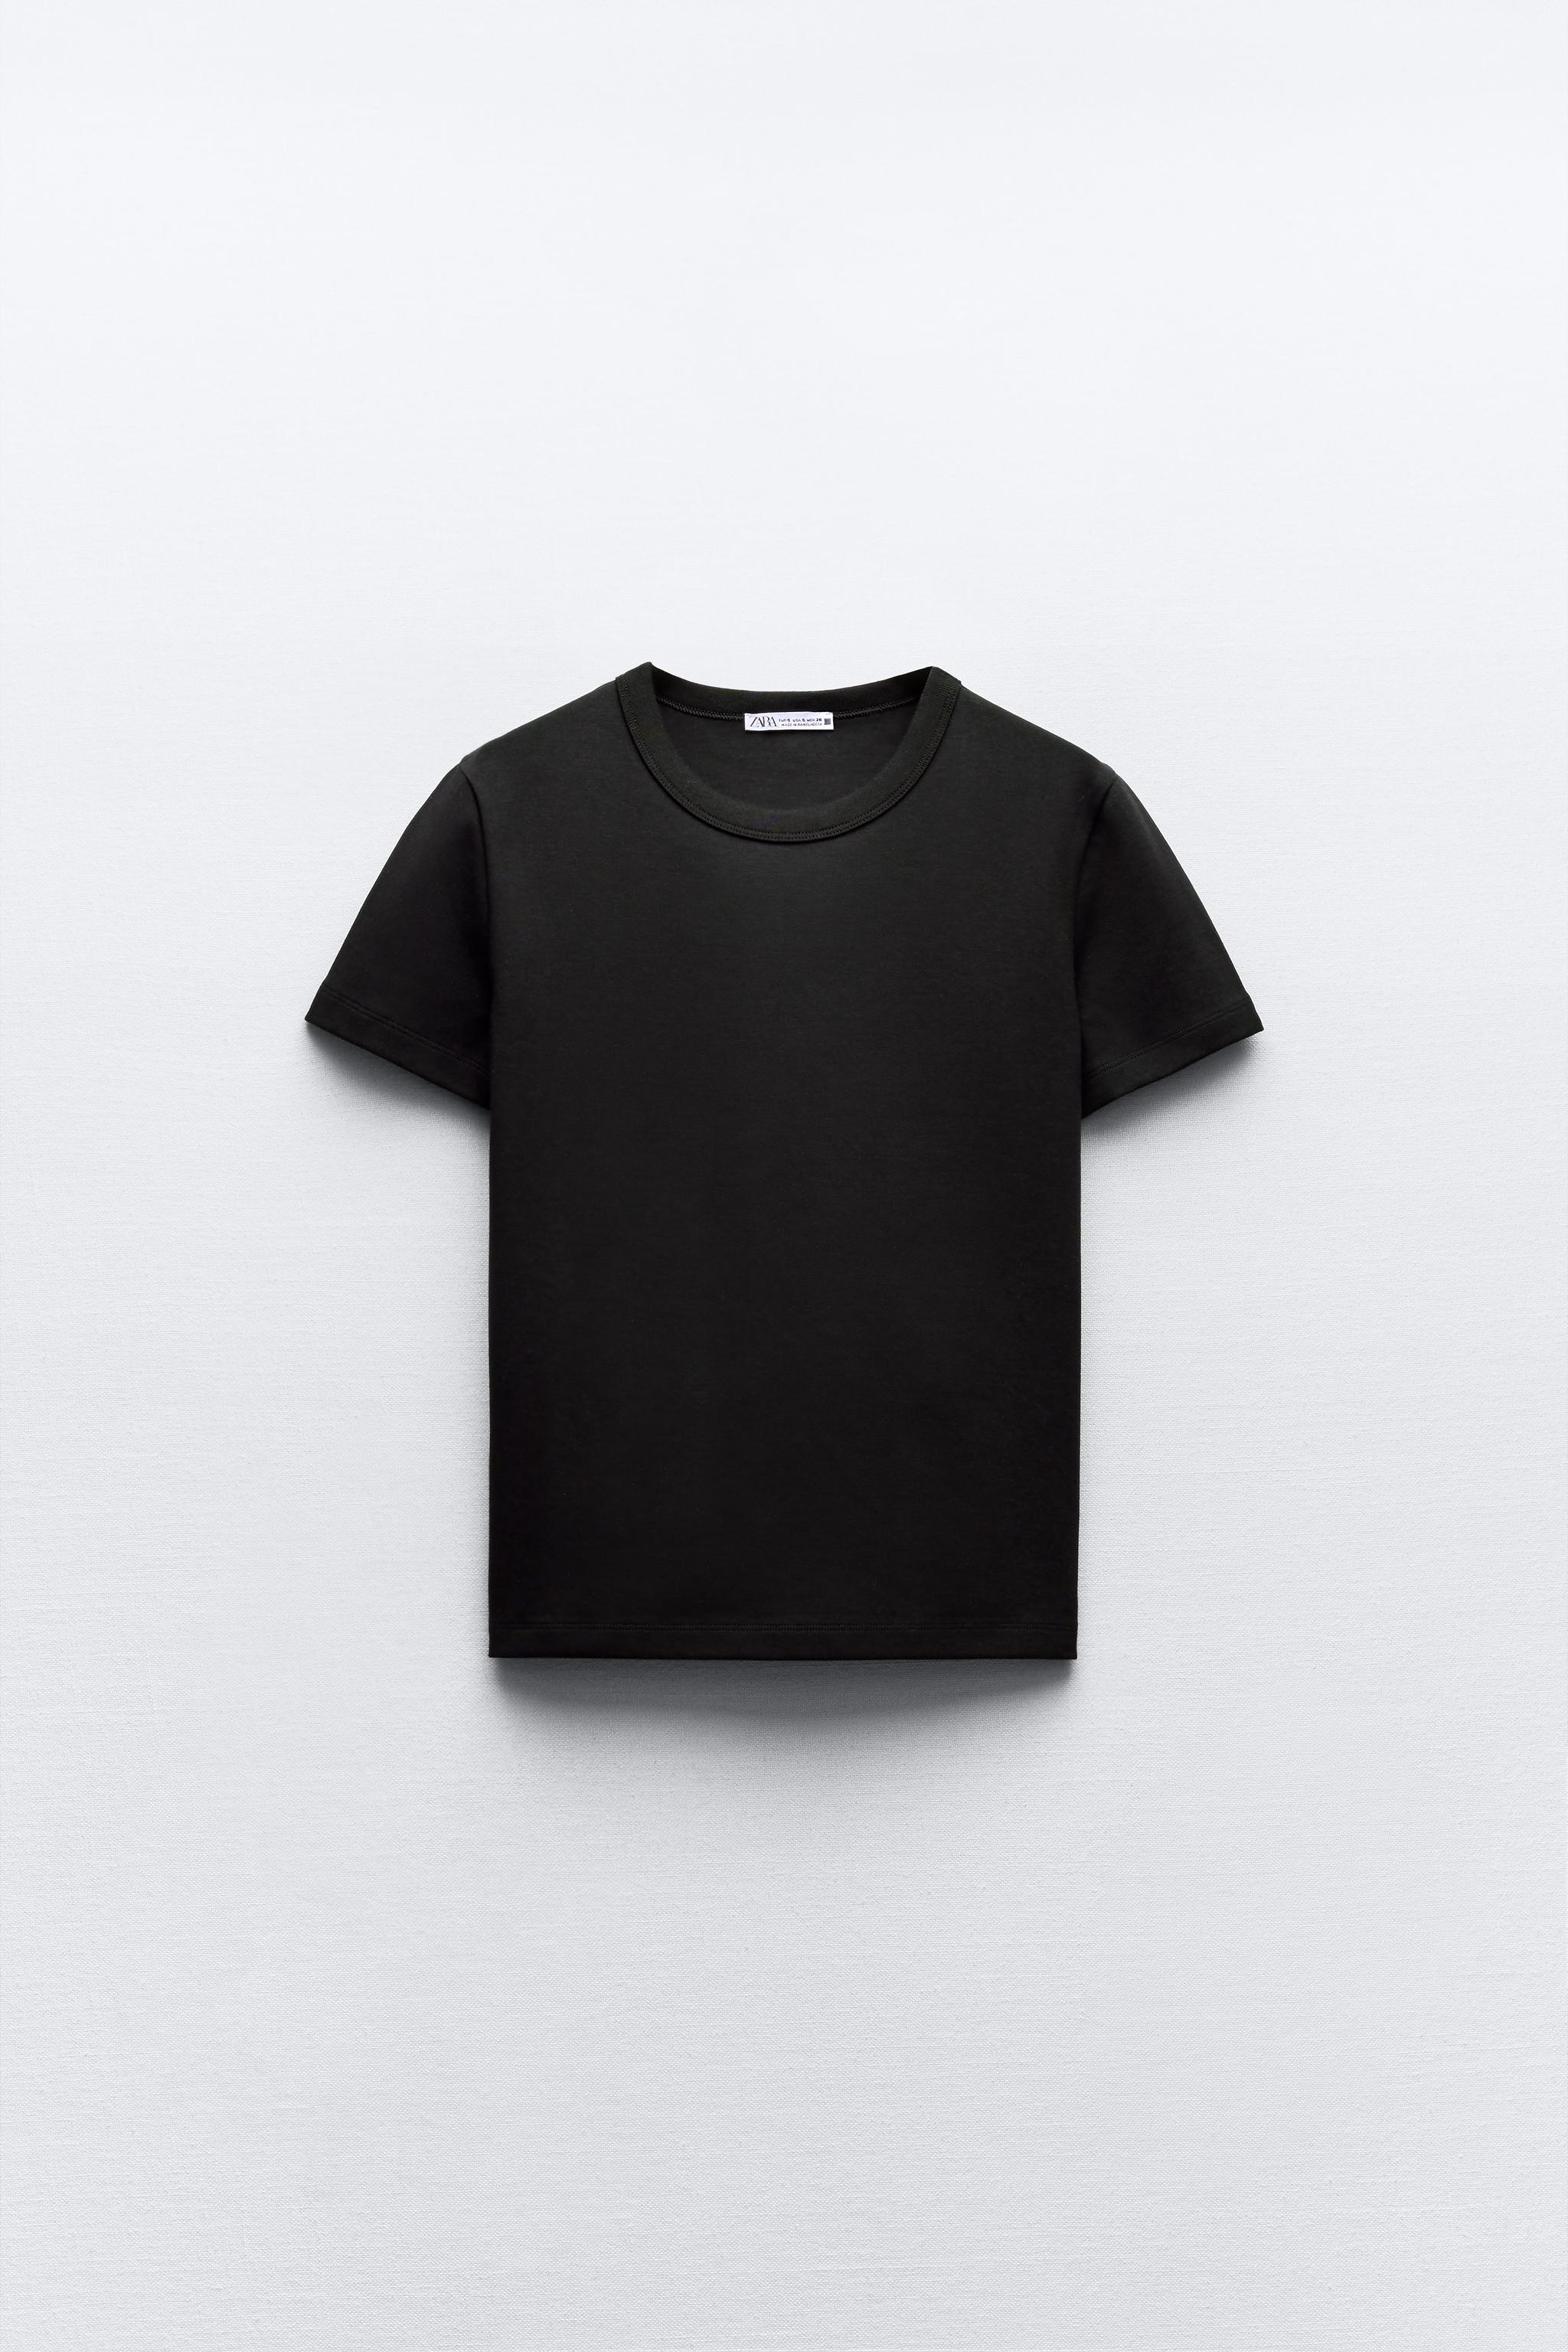 半袖Tシャツ – レディース | 最新コレクション | ZARA 日本